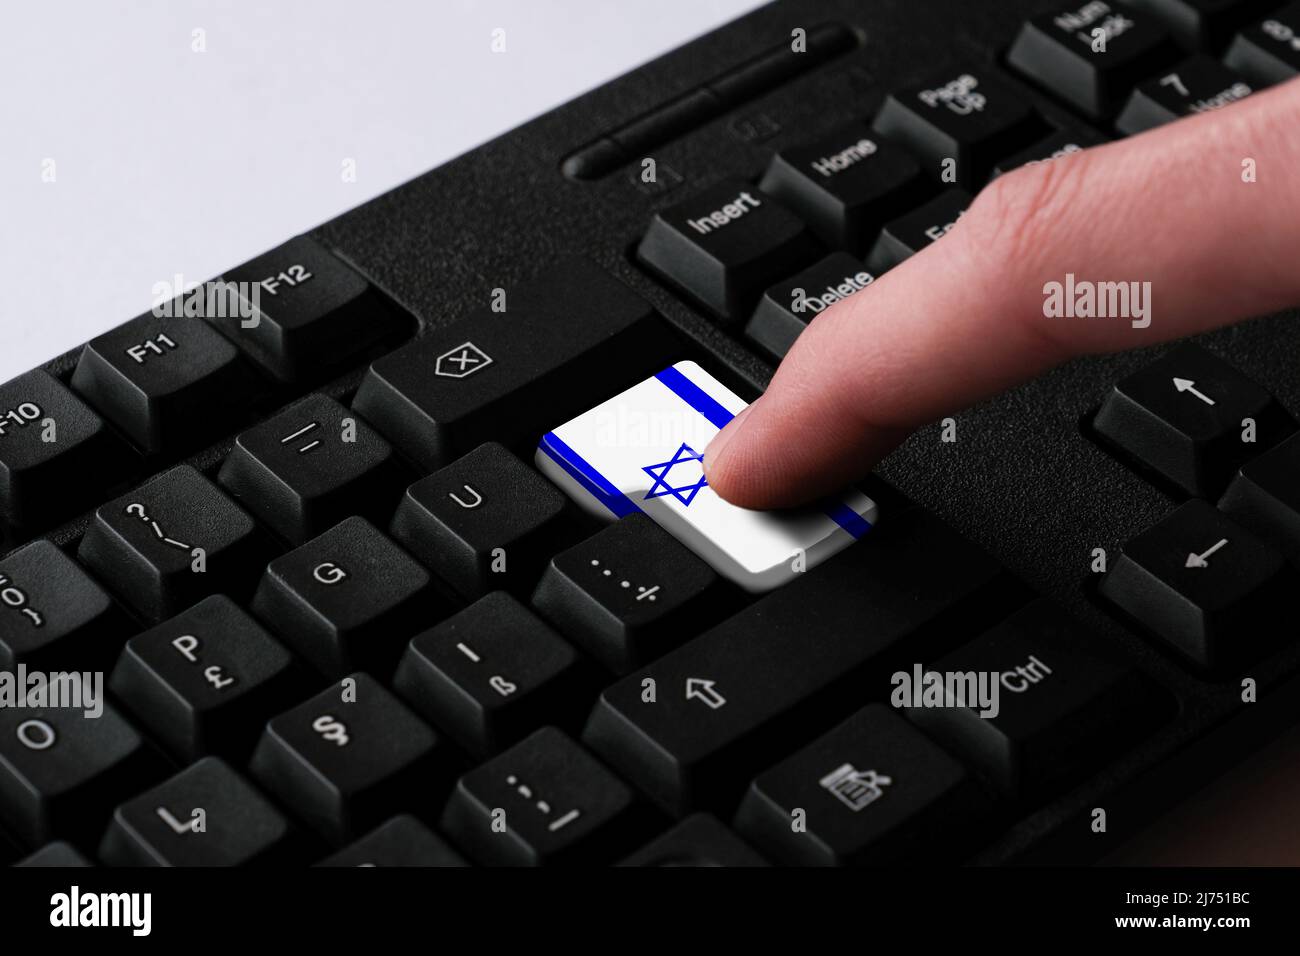 Das Drücken der Enter-Taste mit der israelischen Flagge stellt einen Cyber-Angriff Israels dar, eine Metapher für das Erlernen der hebräischen Sprache, eine schwarze Tastatur aus nächster Nähe Stockfoto